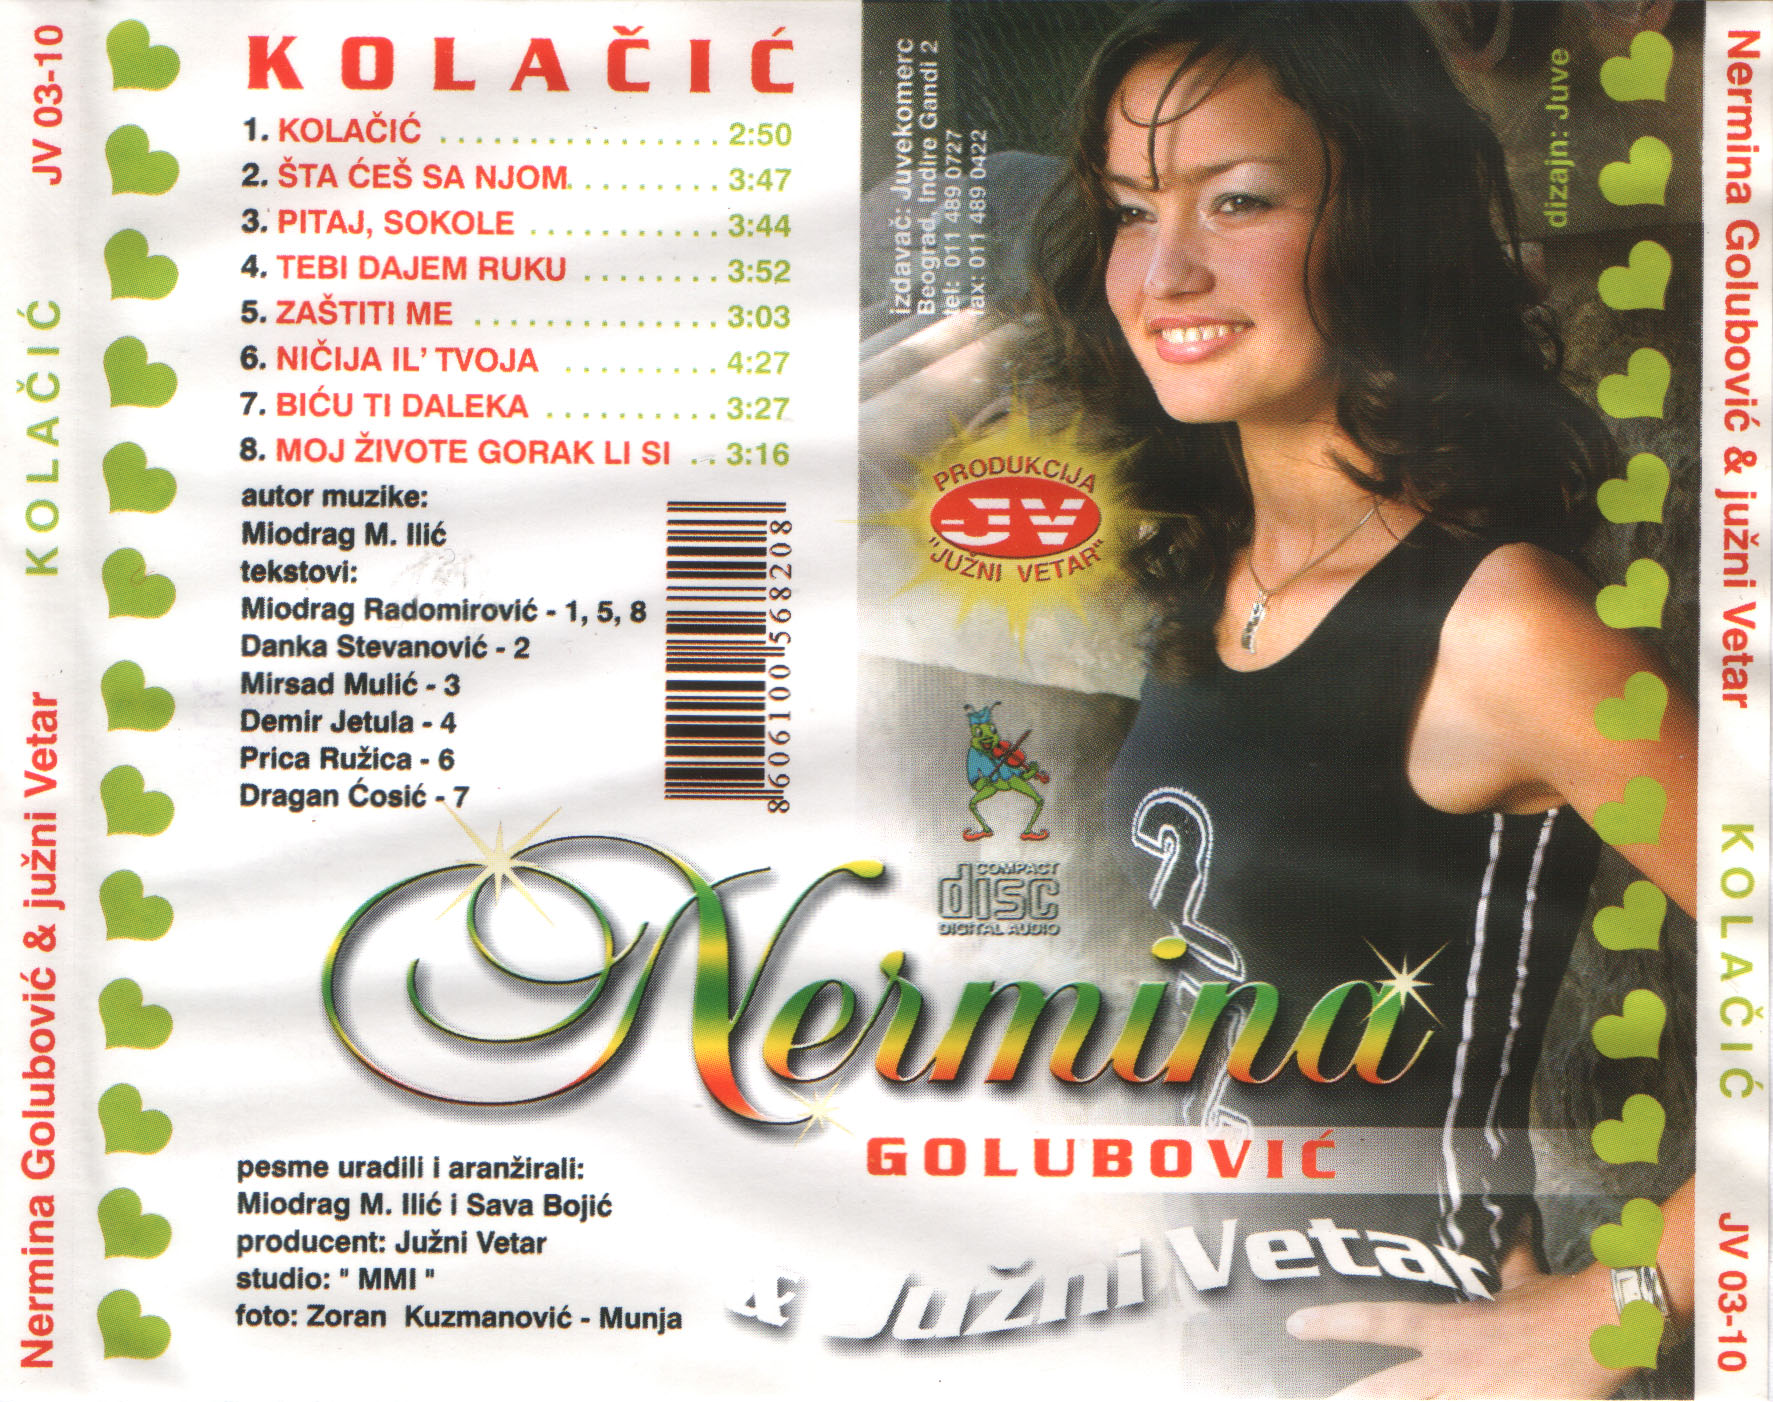 Nermina Golubovic 2003 Zadnja